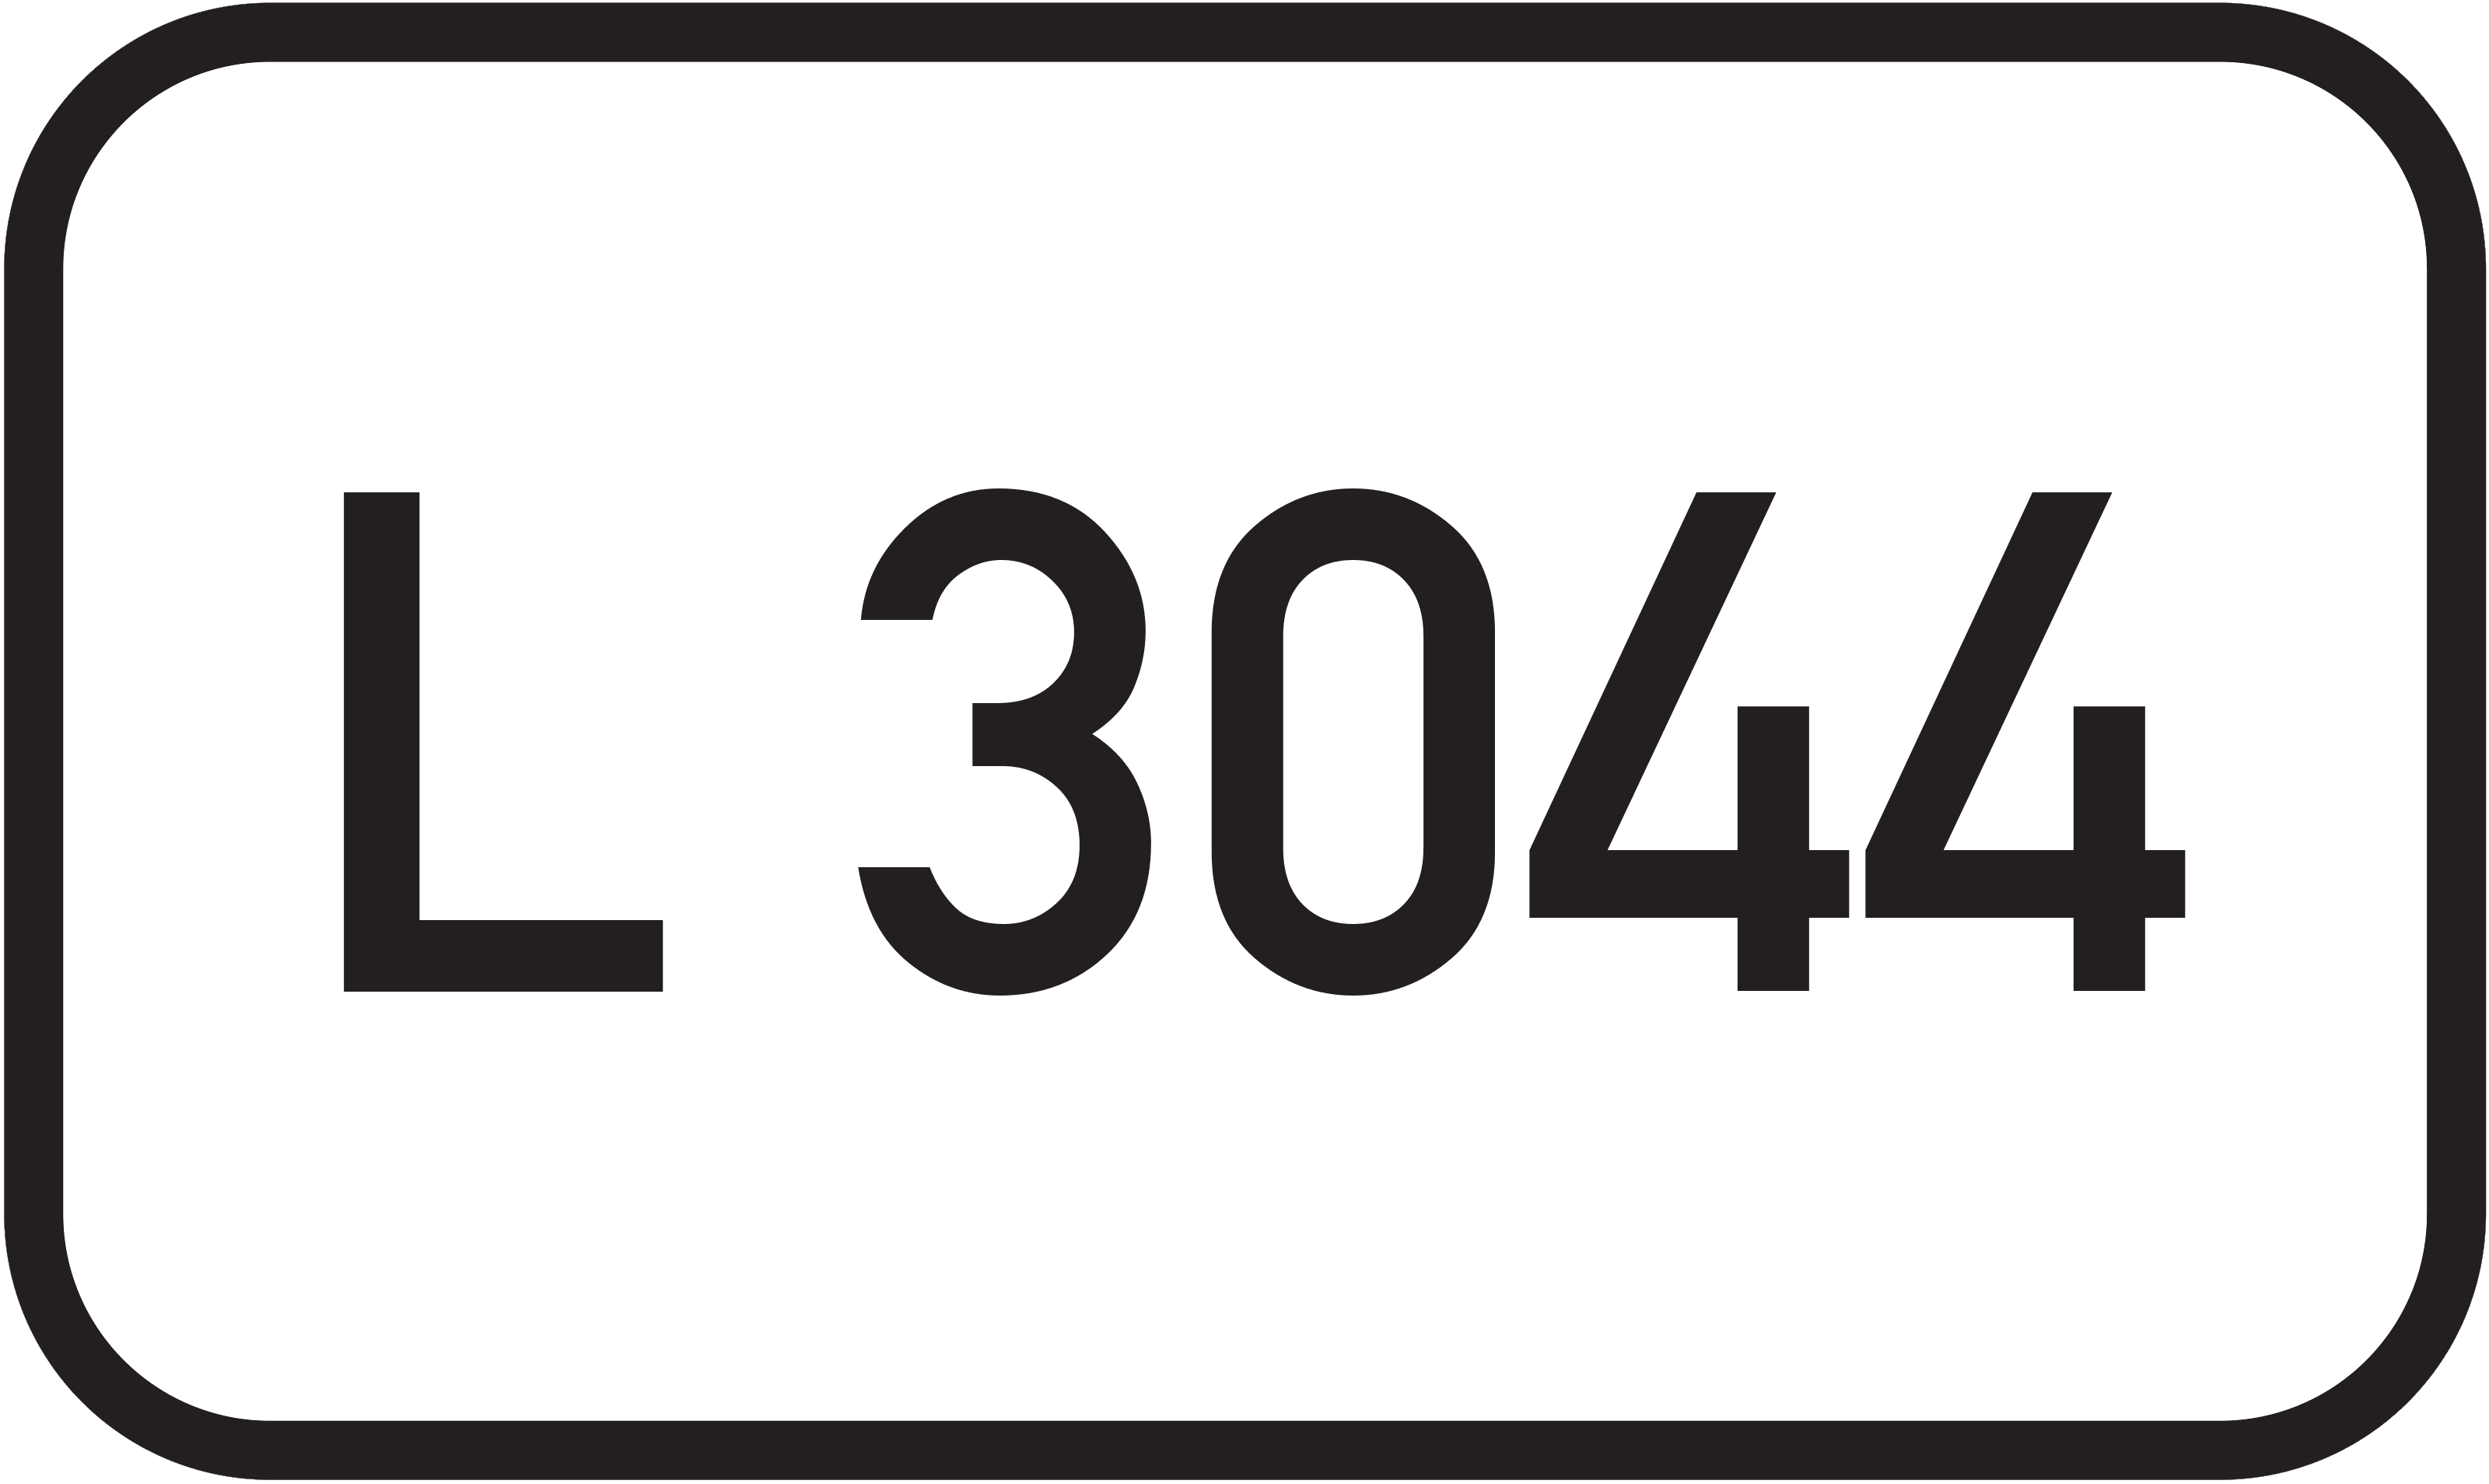 Landesstraße L 3044